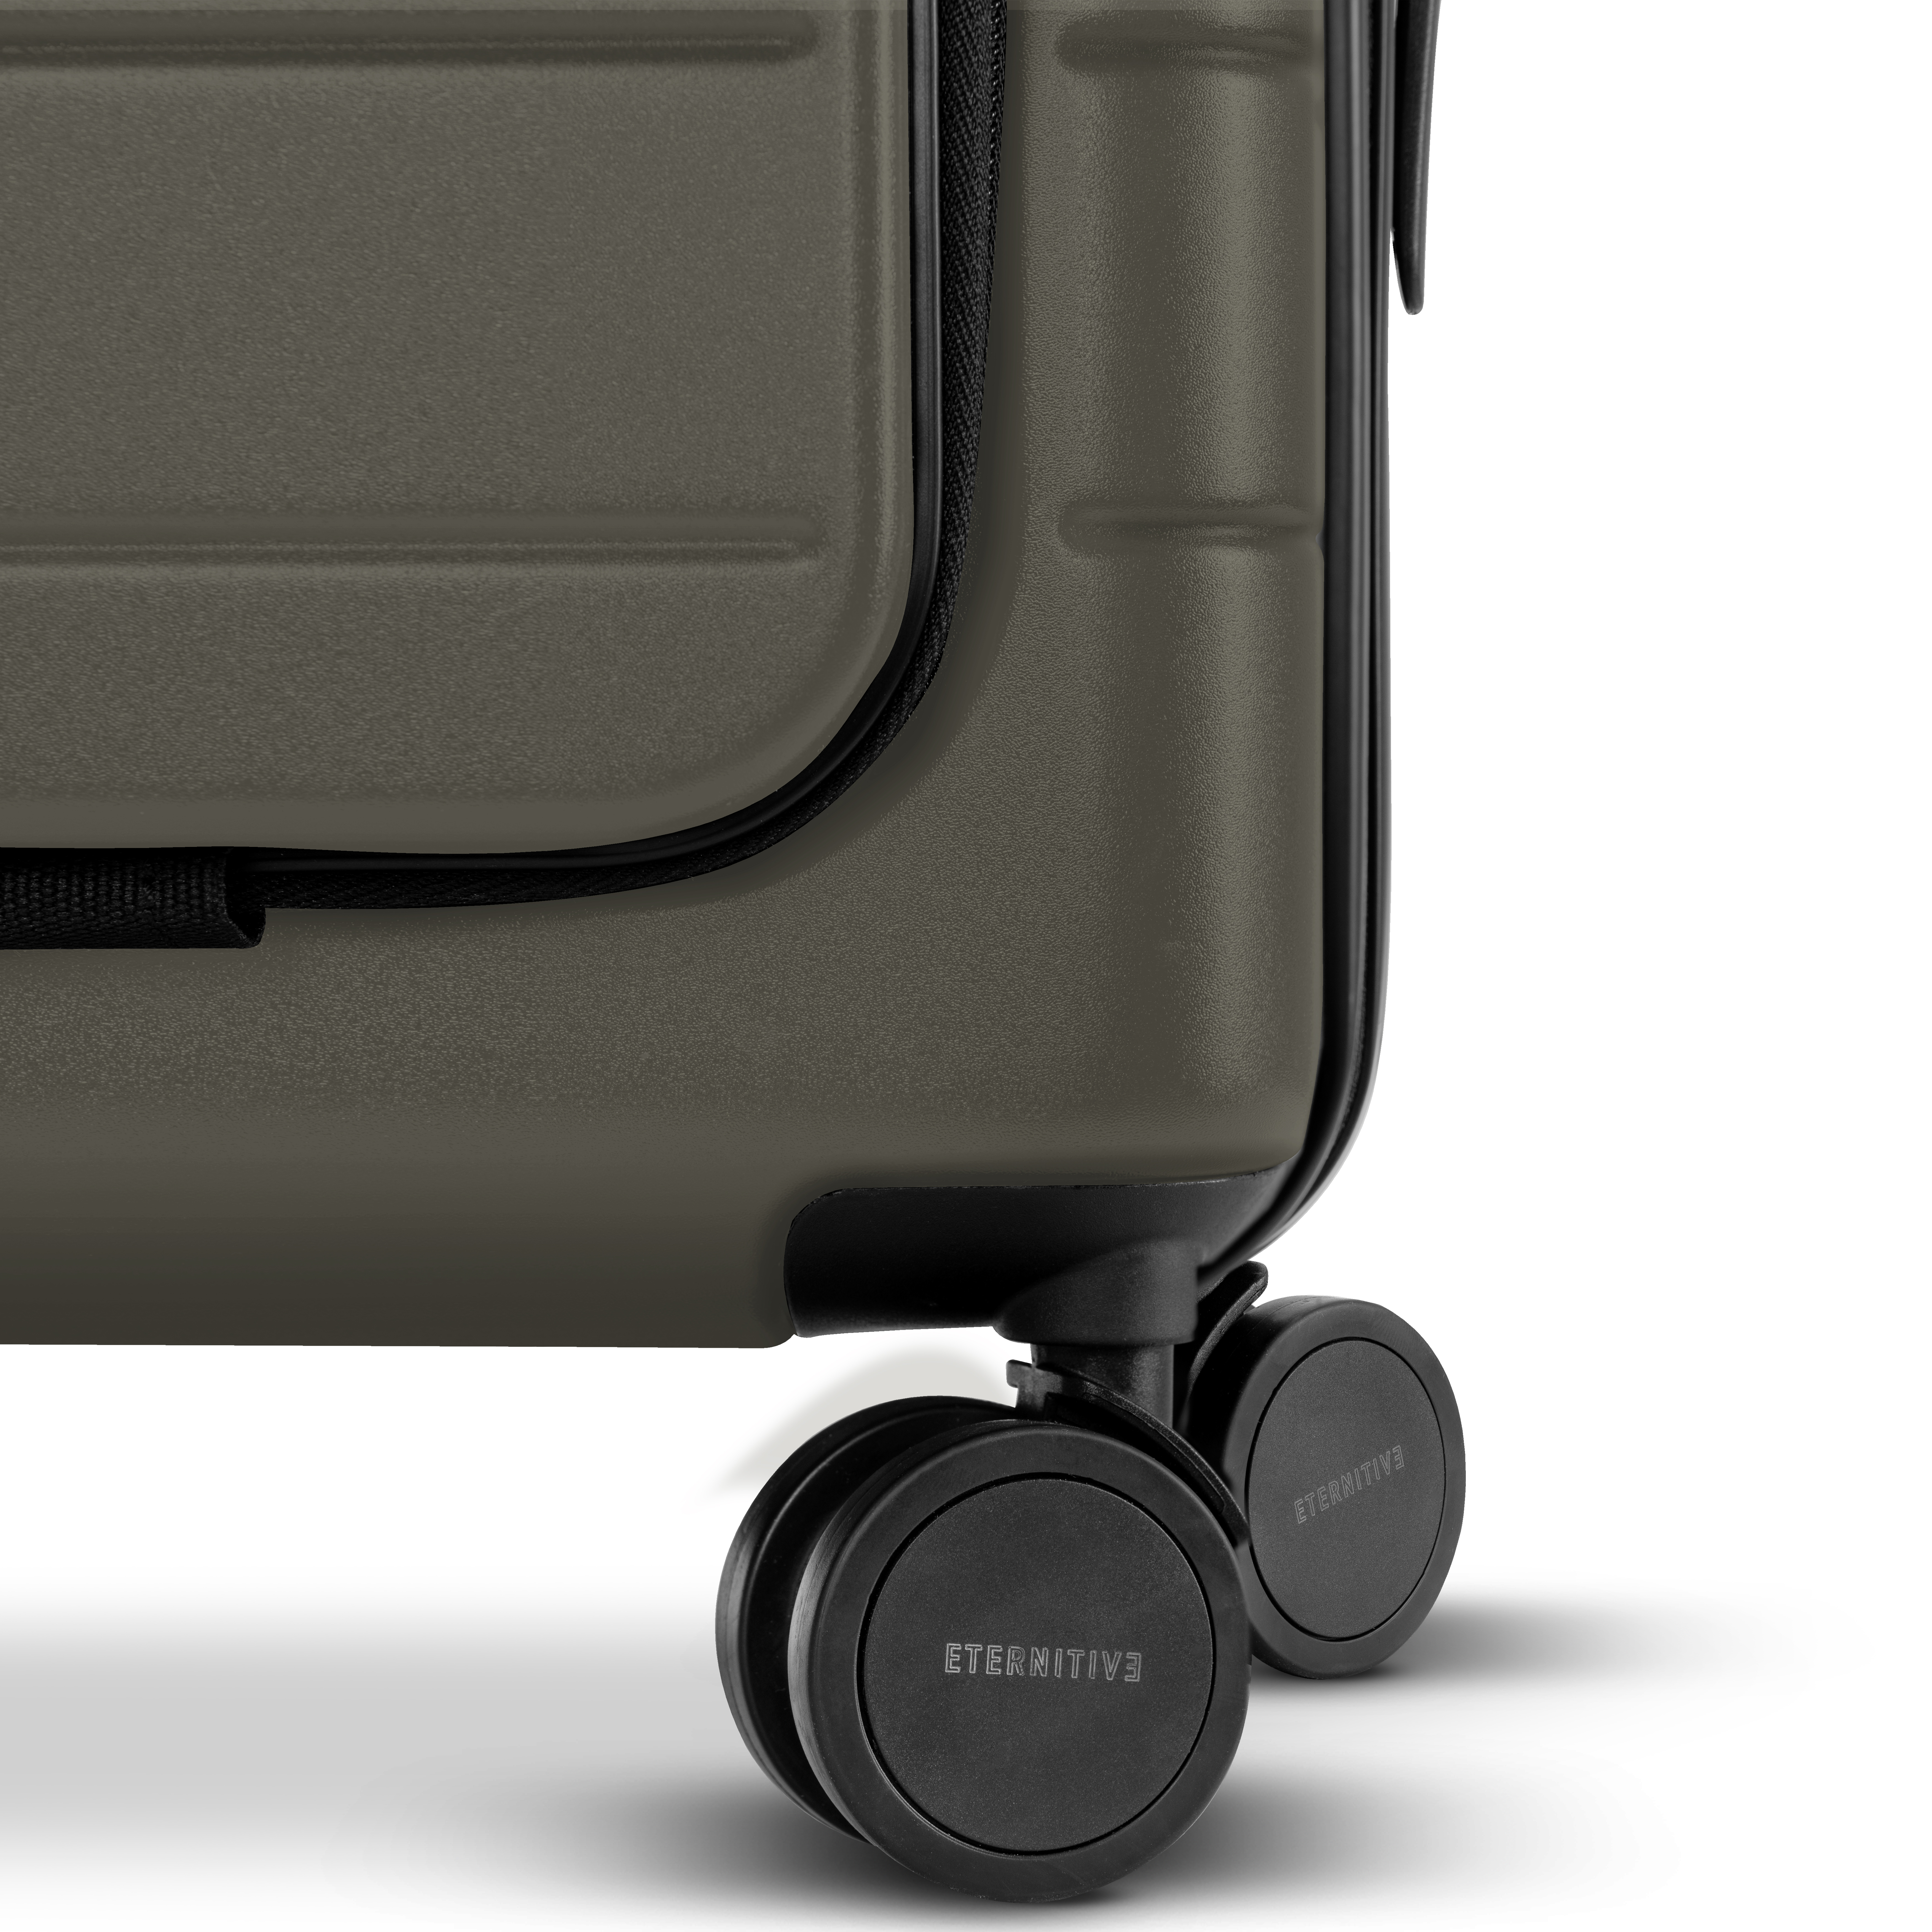 E3 Koffer set 2 teilig: \n Handgepäck plus + Großer Koffer Olivgrün